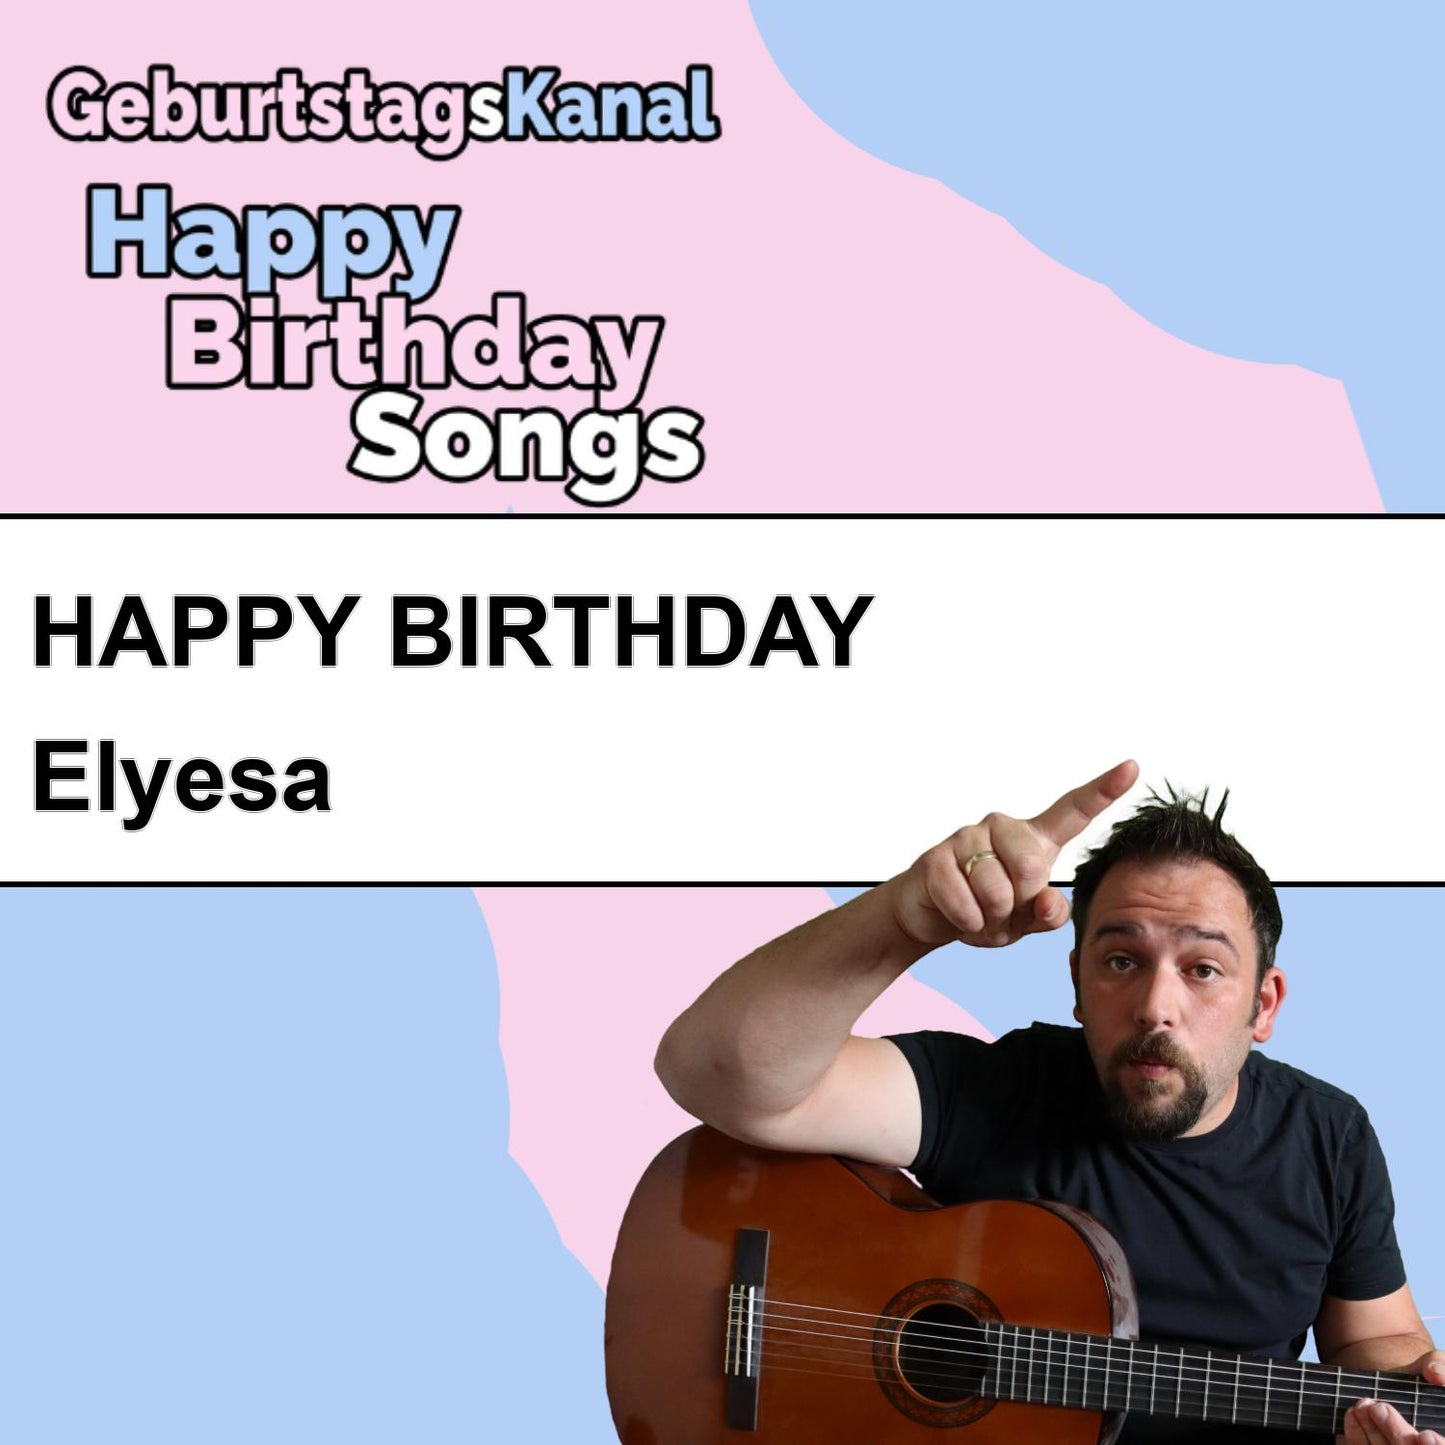 Produktbild Happy Birthday to you Elyesa mit Wunschgrußbotschaft